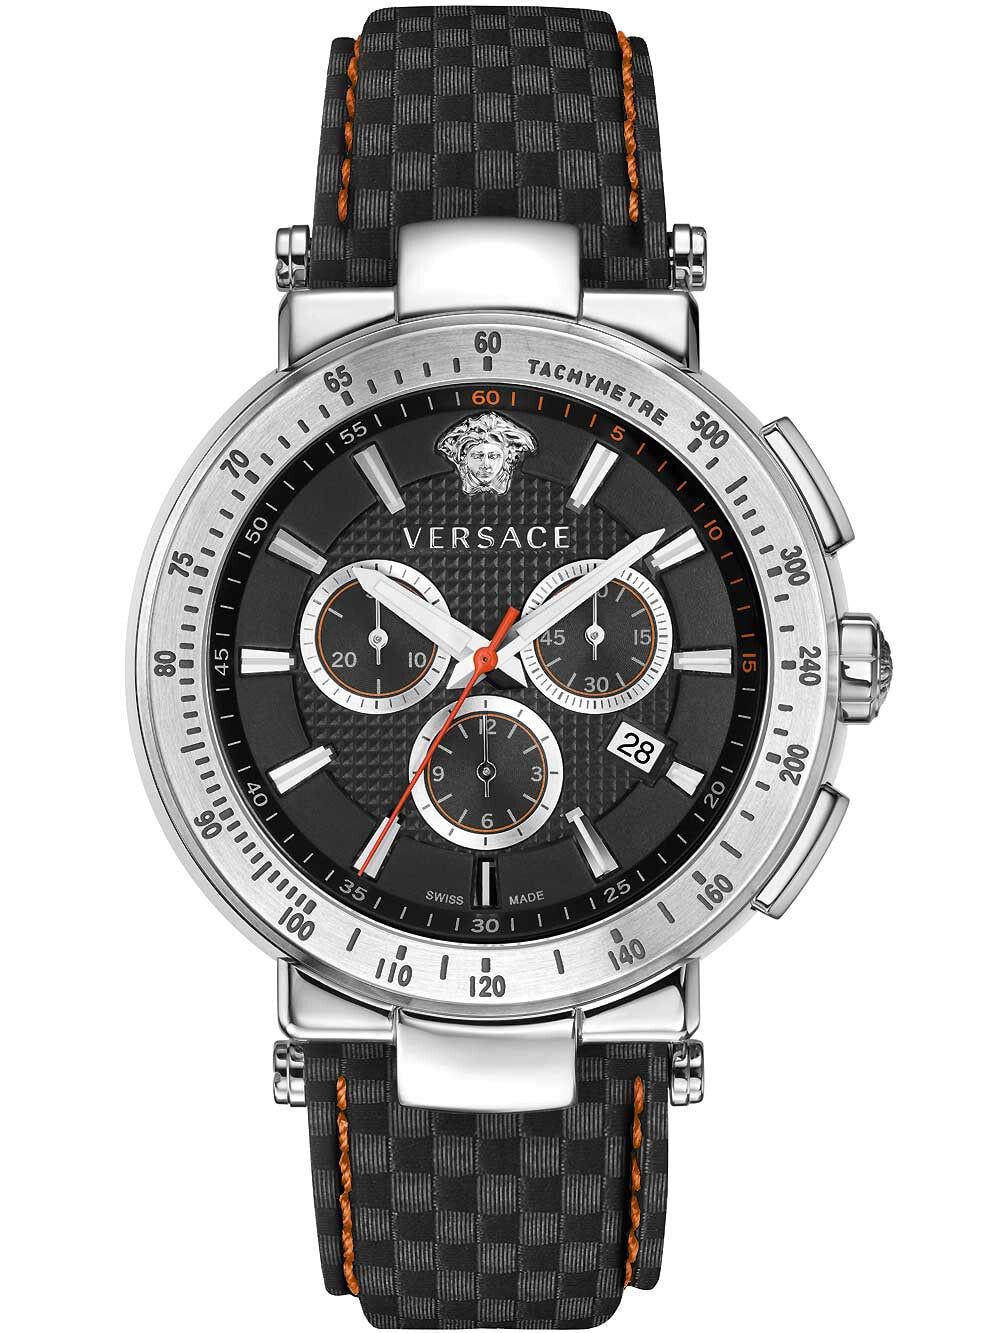 Мужские наручные часы с серым кожаным ремешком  Versace VFG040013 Mystique Sport chrono 43mm 5ATM